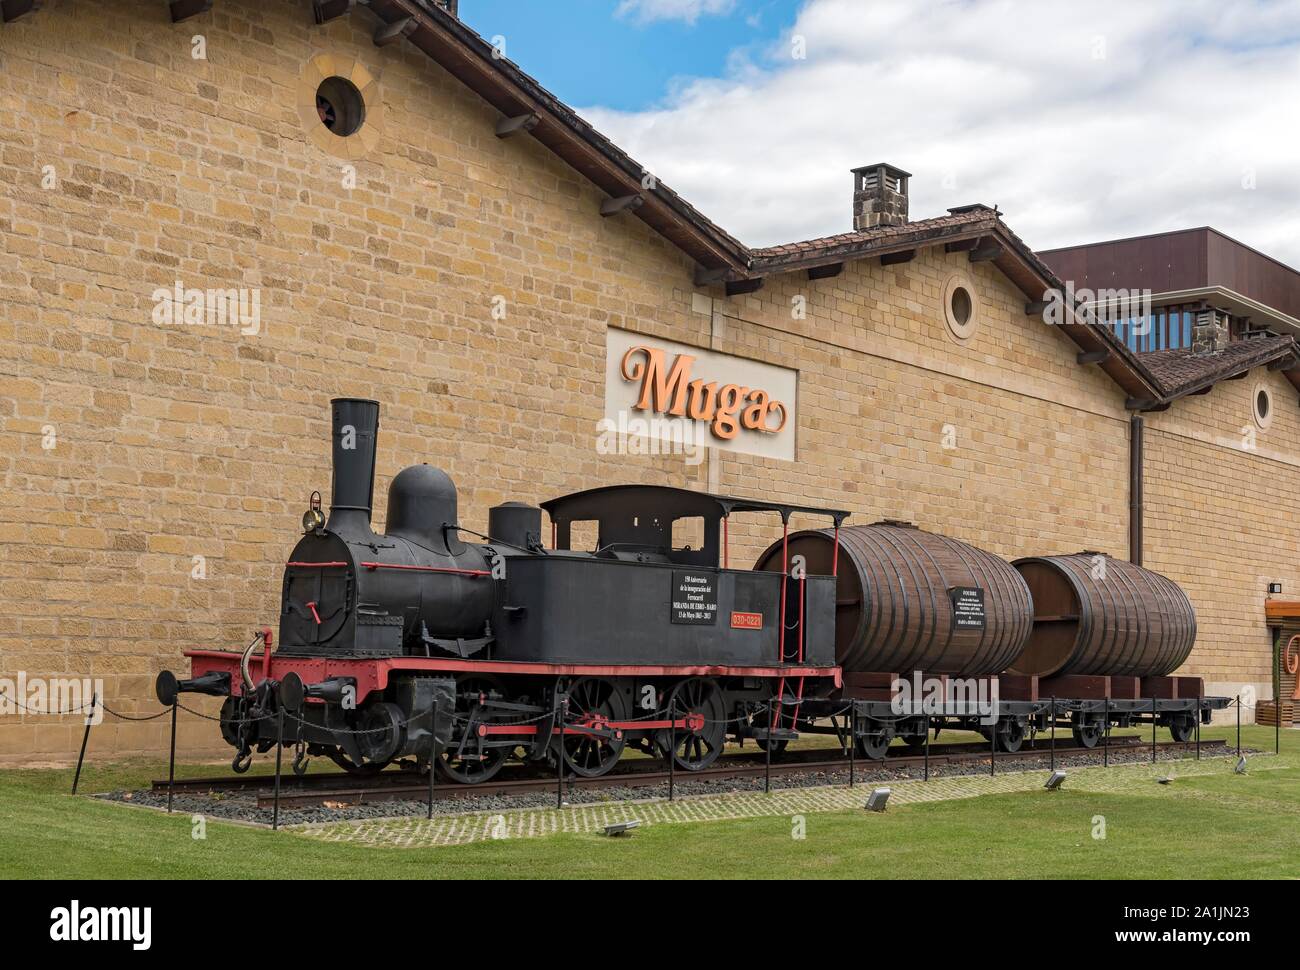 Train historique à Muga Winery, Barrio de la Estacion, Haro, La Rioja, Espagne Banque D'Images